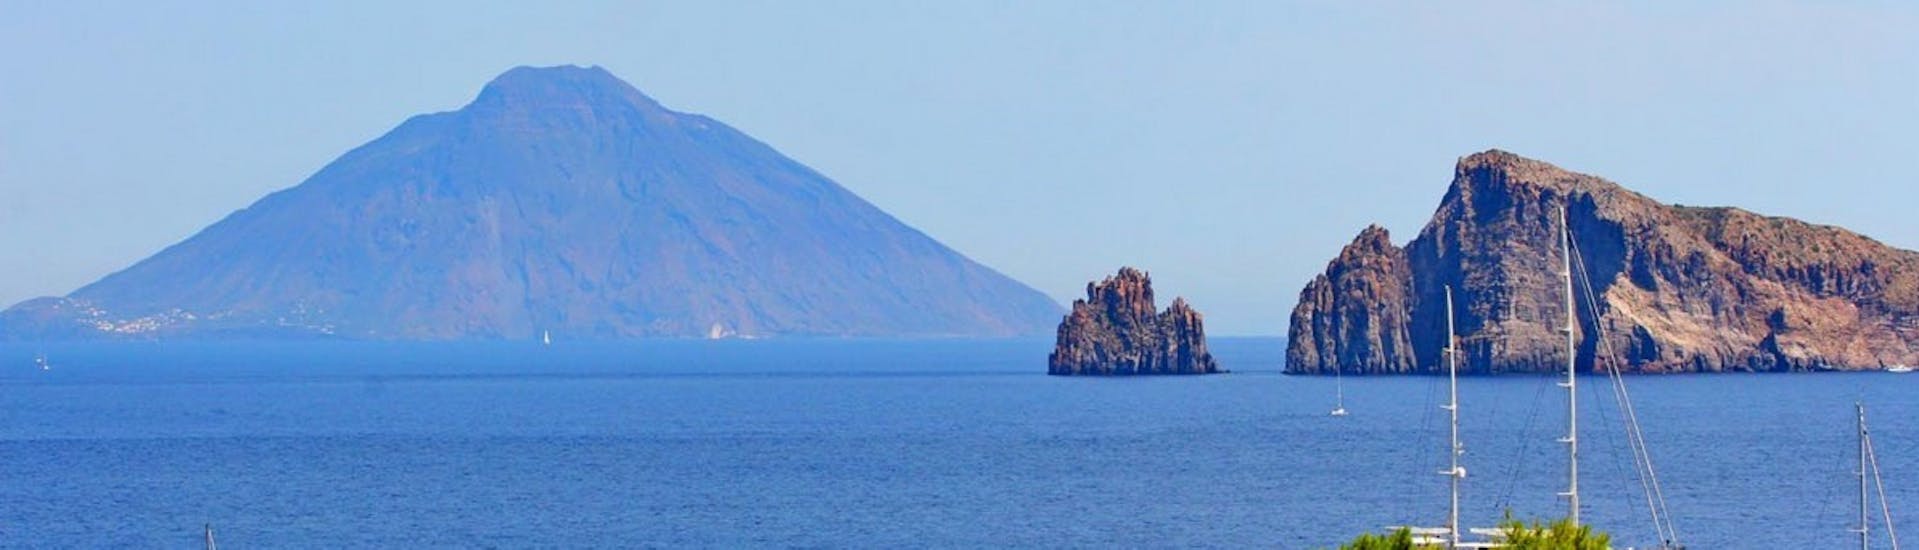 Bild der Äolischen Inseln, aufgenommen bei der Bootstour nach Stromboli, Lipari und Vulcano von Tropea aus.